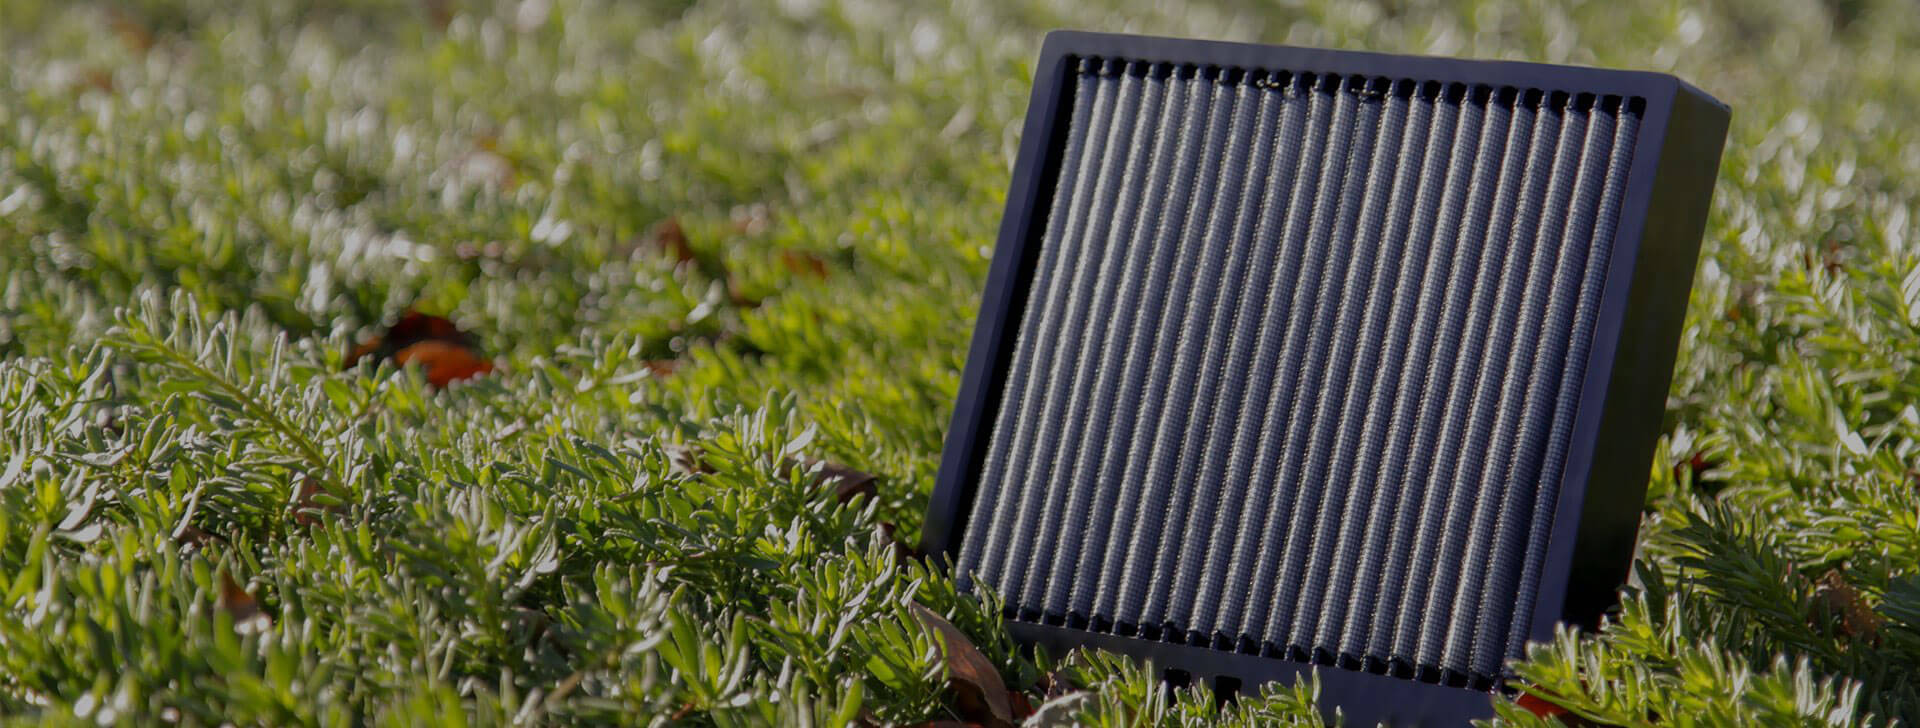 filtro dell’aria per abitacolo nell’erba